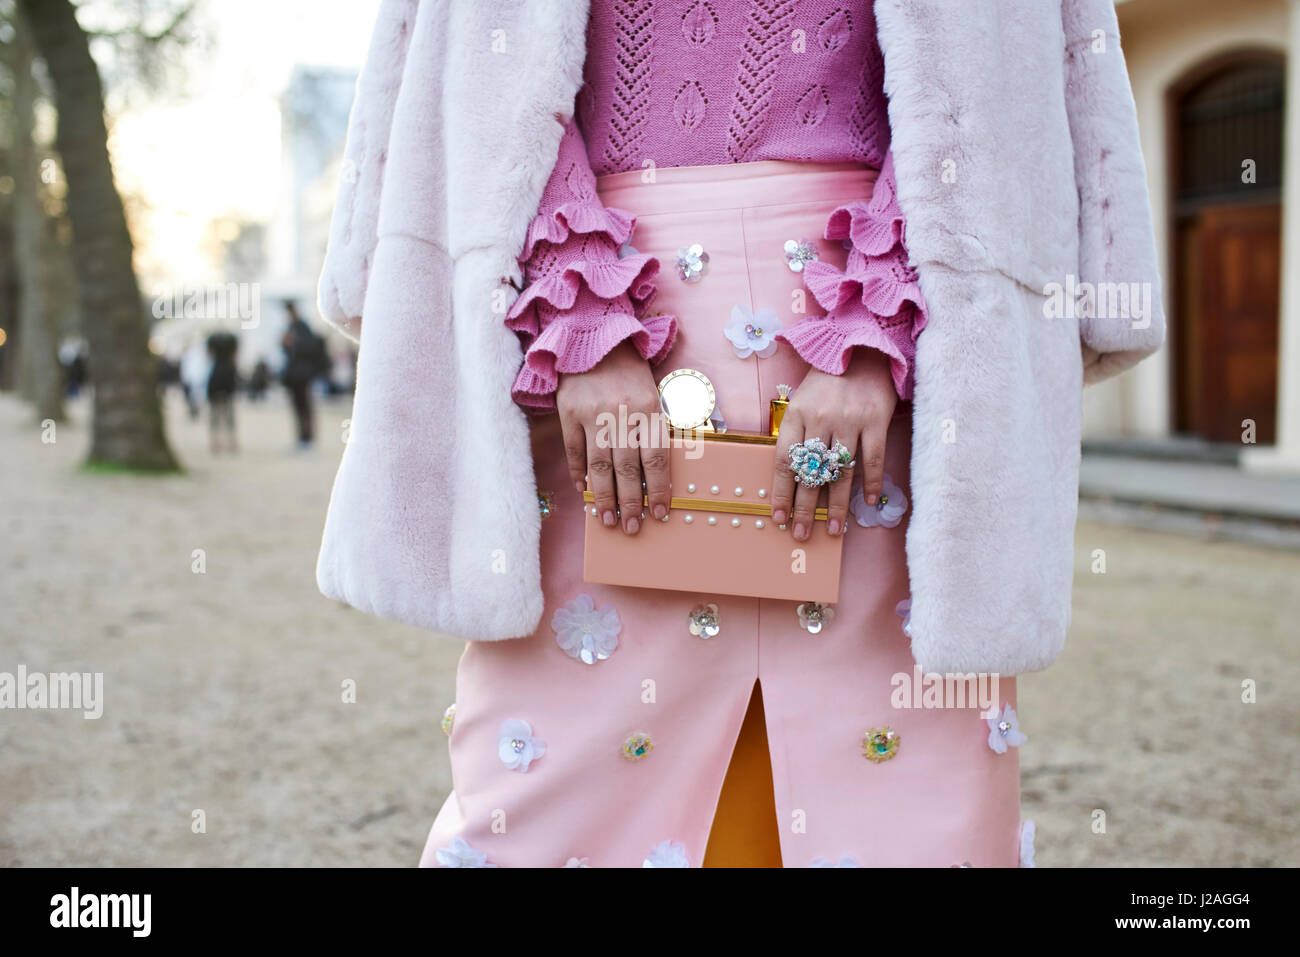 Londres - Février 2017 : femme vêtue de rose, avec un chandail à manches longues ruffle, un manteau sur ses épaules et une jupe avec l'appliqué, tenant un sac à main décoré dans la rue lors de la London Fashion Week, horizontal, vue avant Banque D'Images